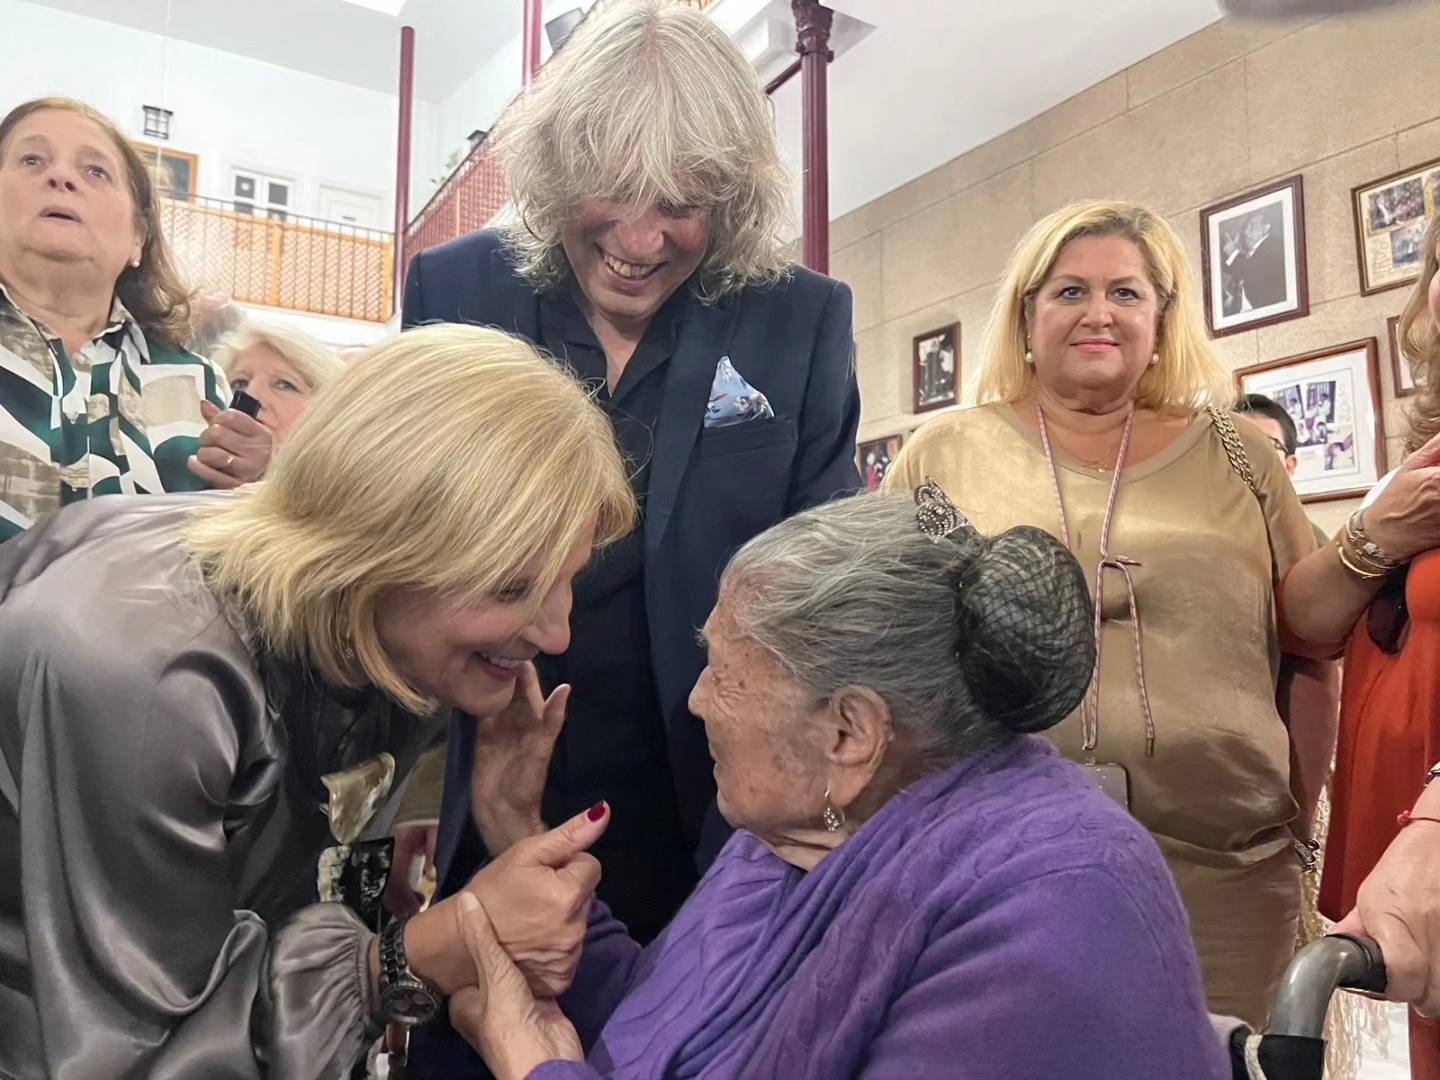 La alcaldesa de Jerez saluda a una mujer de la peña Tío José ante la mirada de José Mercé.